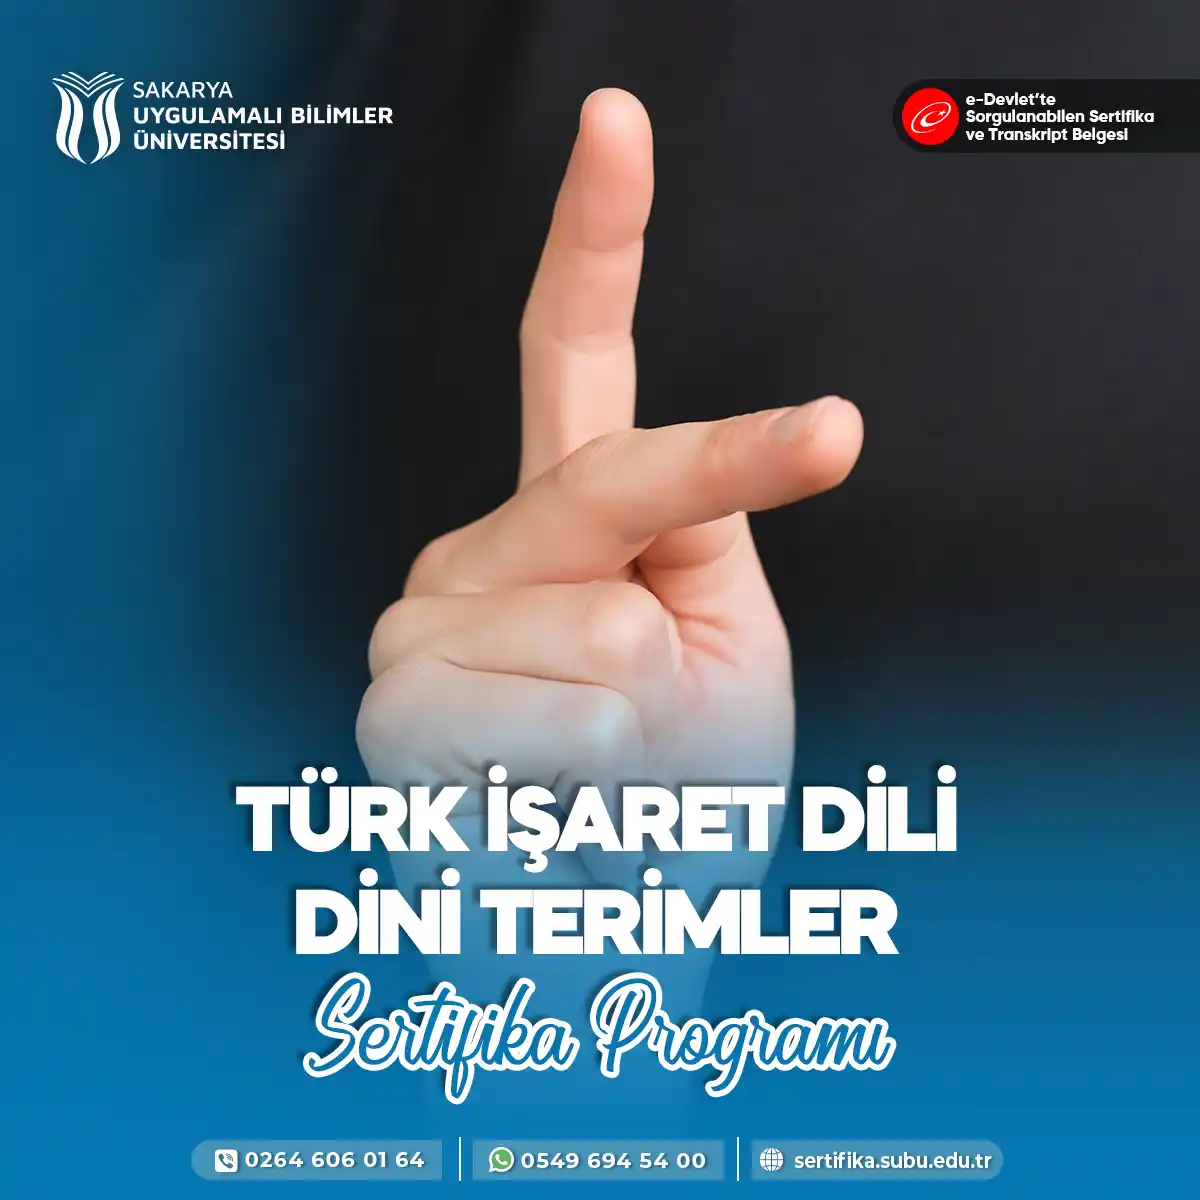 Türk İşaret Dili Dini Terimler Eğitimi Sertifika Programı